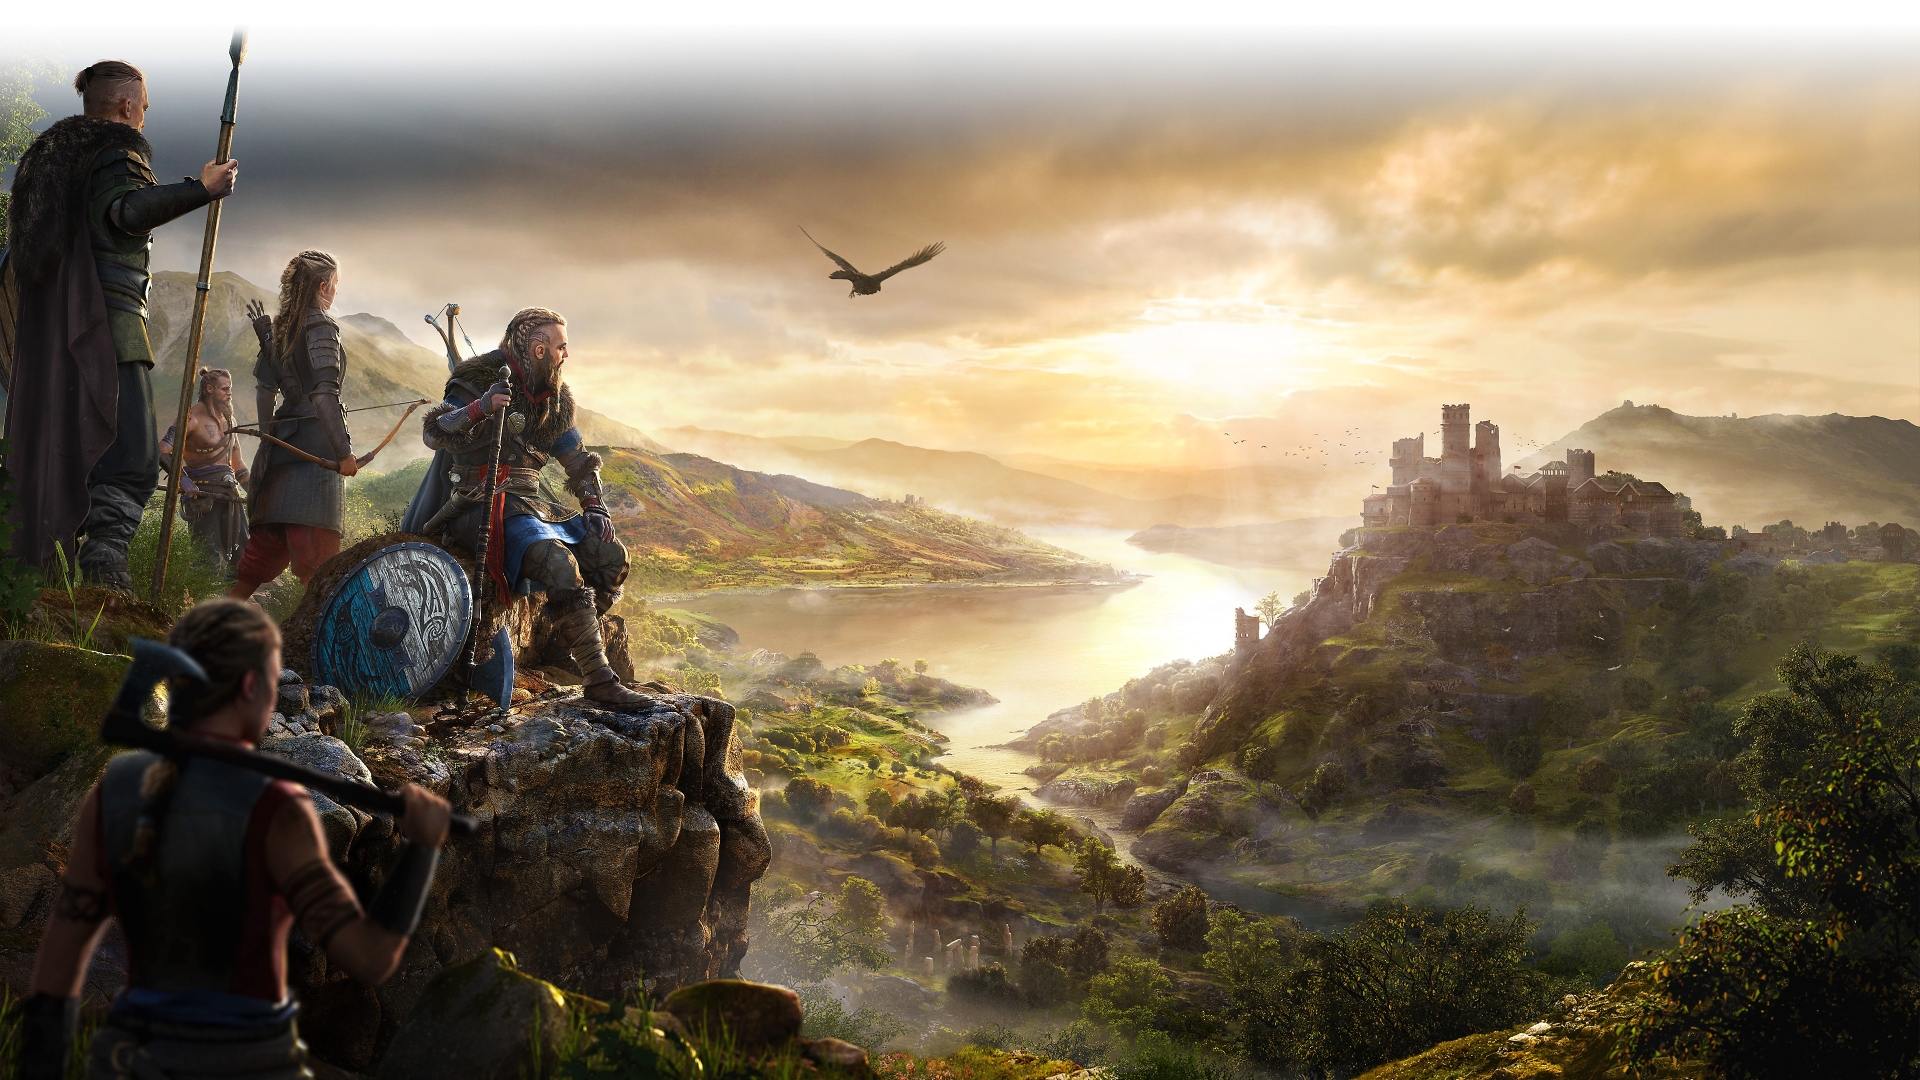 Hình nền Assassin\'s Creed Valhalla - PlayStation Universe: Assassin\'s Creed Valhalla không chỉ là tựa game gây ấn tượng mạnh với cộng đồng game thủ, mà còn là một nguồn cảm hứng không thể bỏ lỡ với chủ đề hình nền. PlayStation Universe sẽ đưa bạn đến với những hình ảnh cực kỳ đẹp mắt về Viking, truyền thống và tinh thần phiêu lưu mà game mang lại.